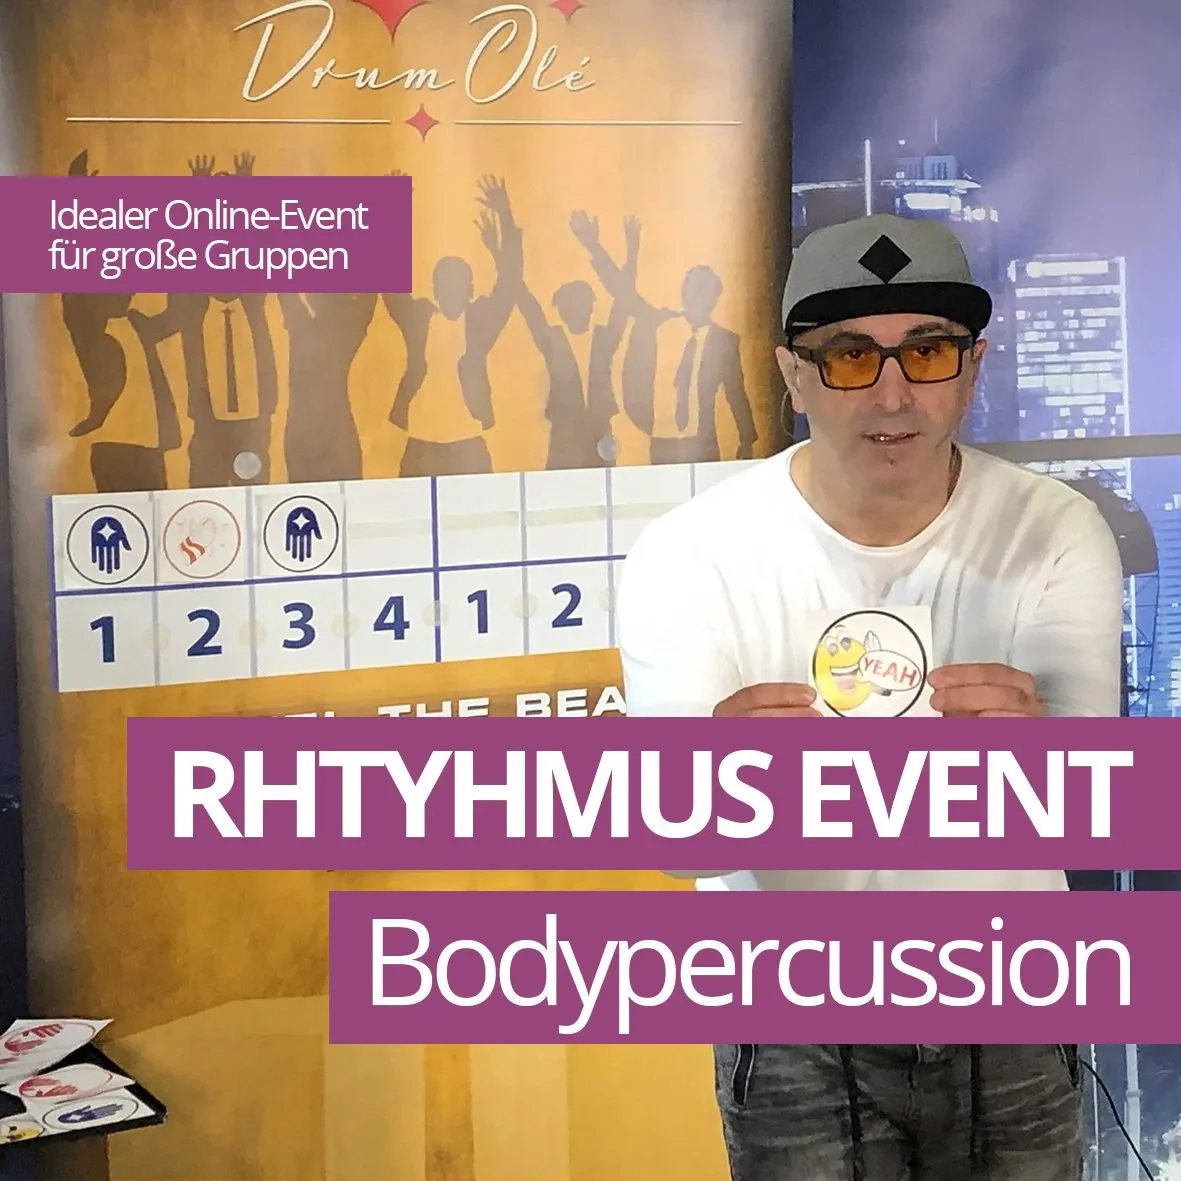 Bodypercussion und Rhythmus Event